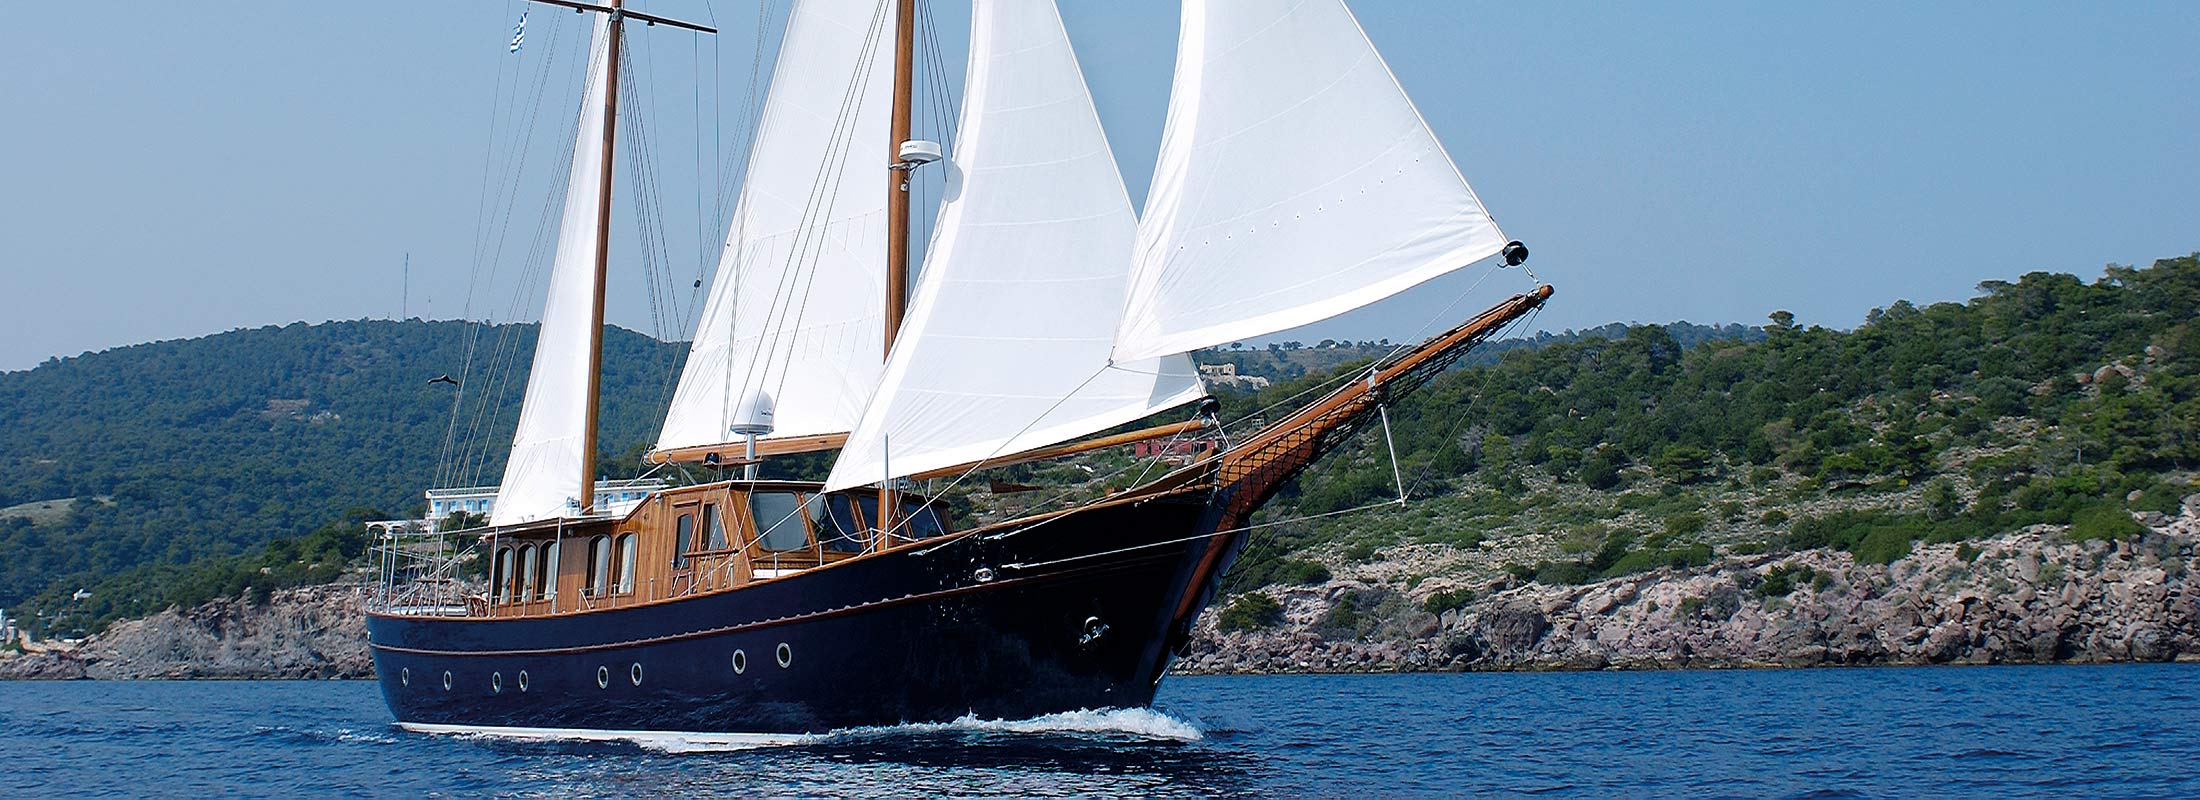 Liana H Motor Yacht for Charter Mediterranean slider 2